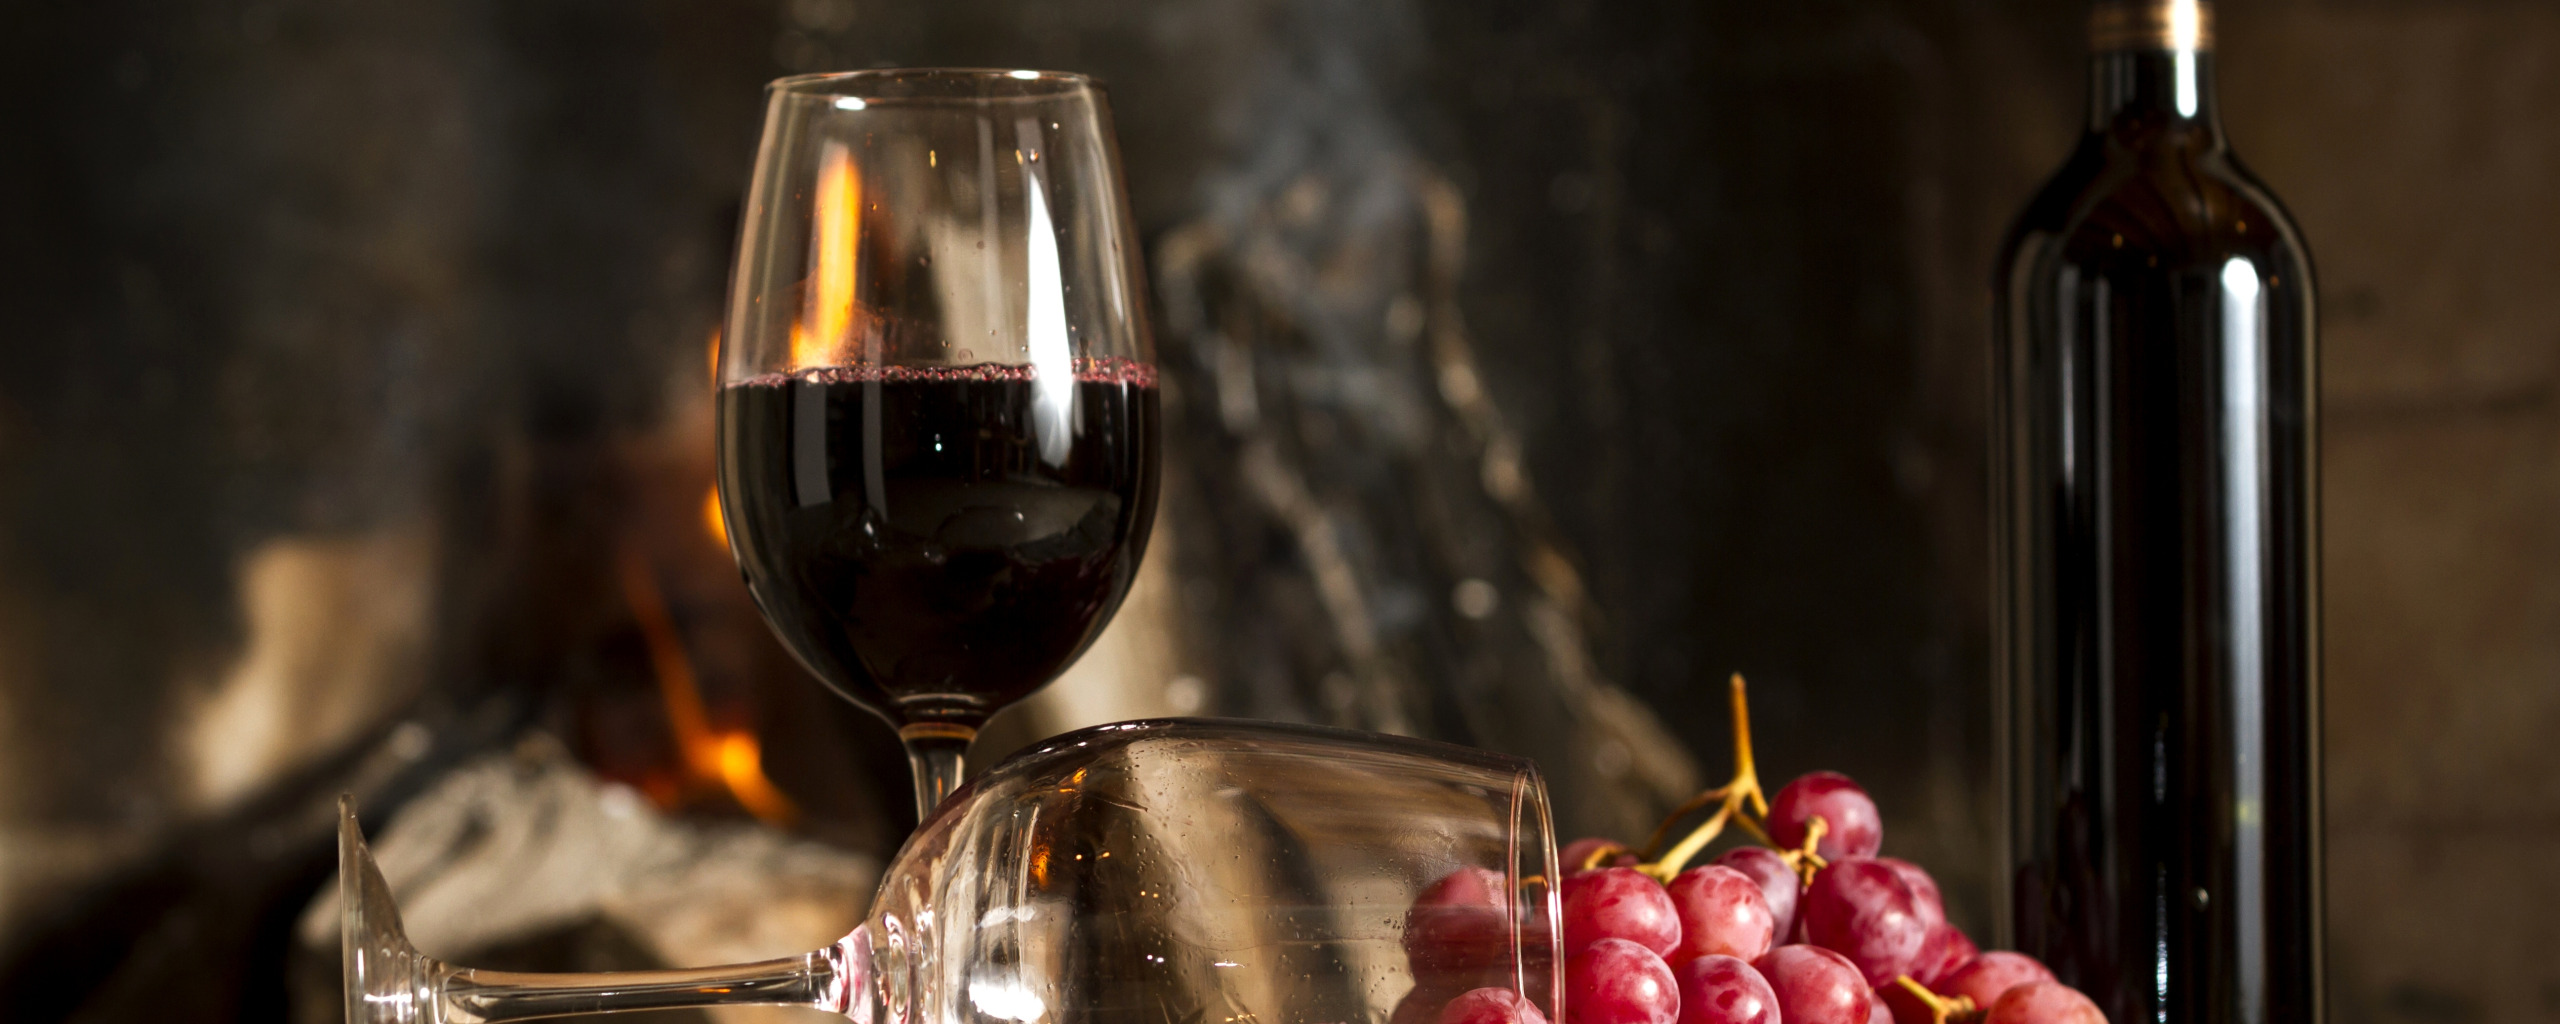 Живые обои вино. Вечер кухня вино. Бутылка вина и бокал. Вина в ресторане фон. Вино на кухне.